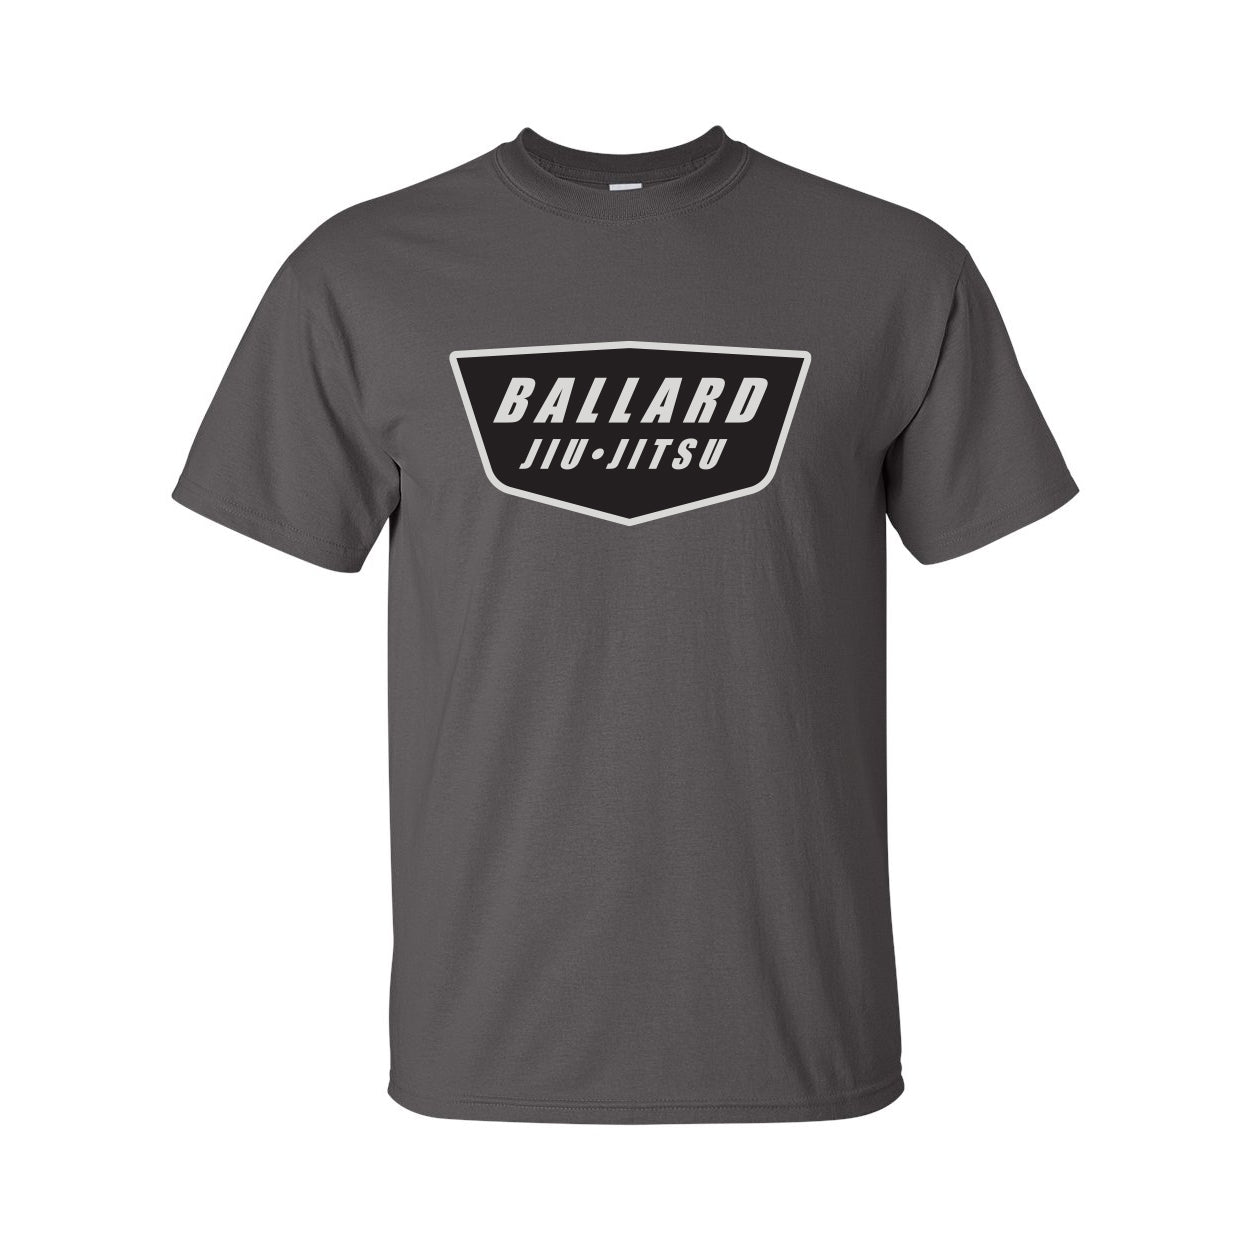 Ballard Jiu Jitsu Octo T-shirt